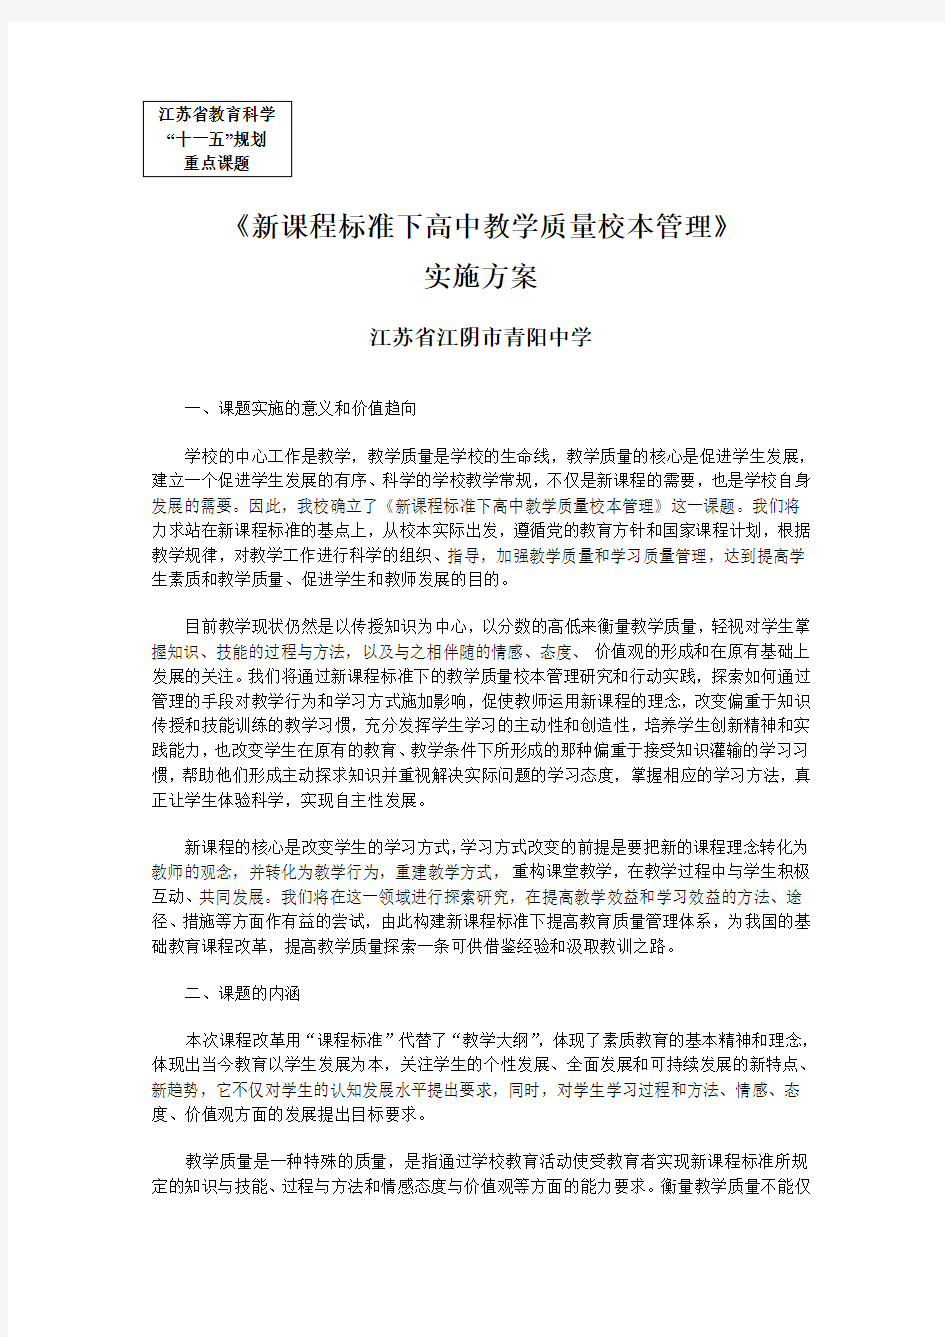 江苏省教育科学规划领导小组办公室